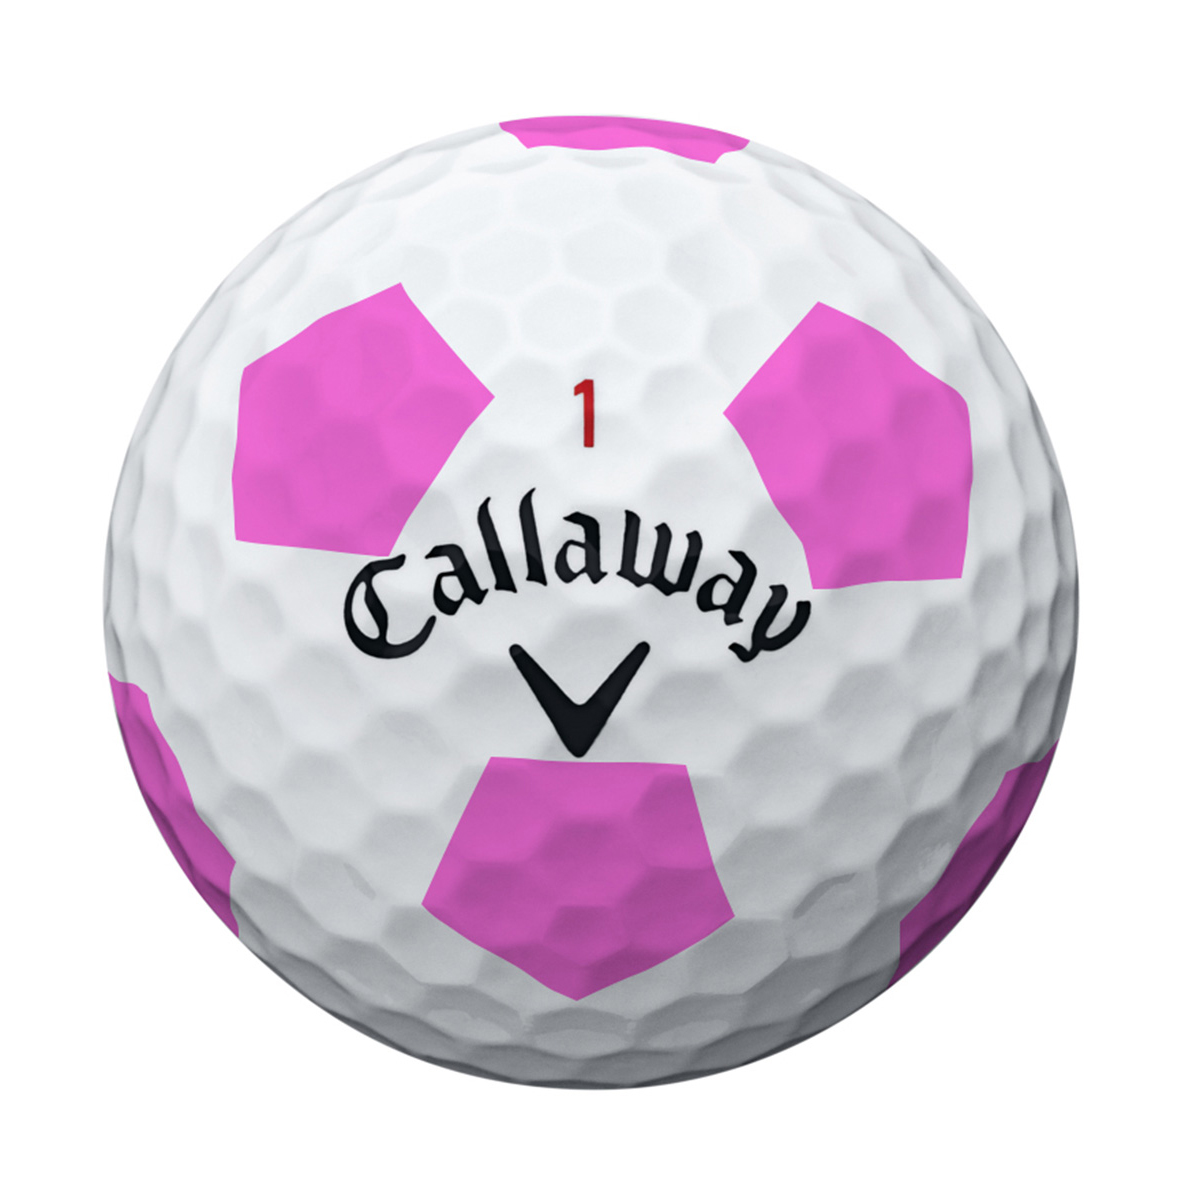 Callaway мяч для гольфа. Мяч для гольфа PNG. Суфле мячики гольф. Callaway Golf PNG.